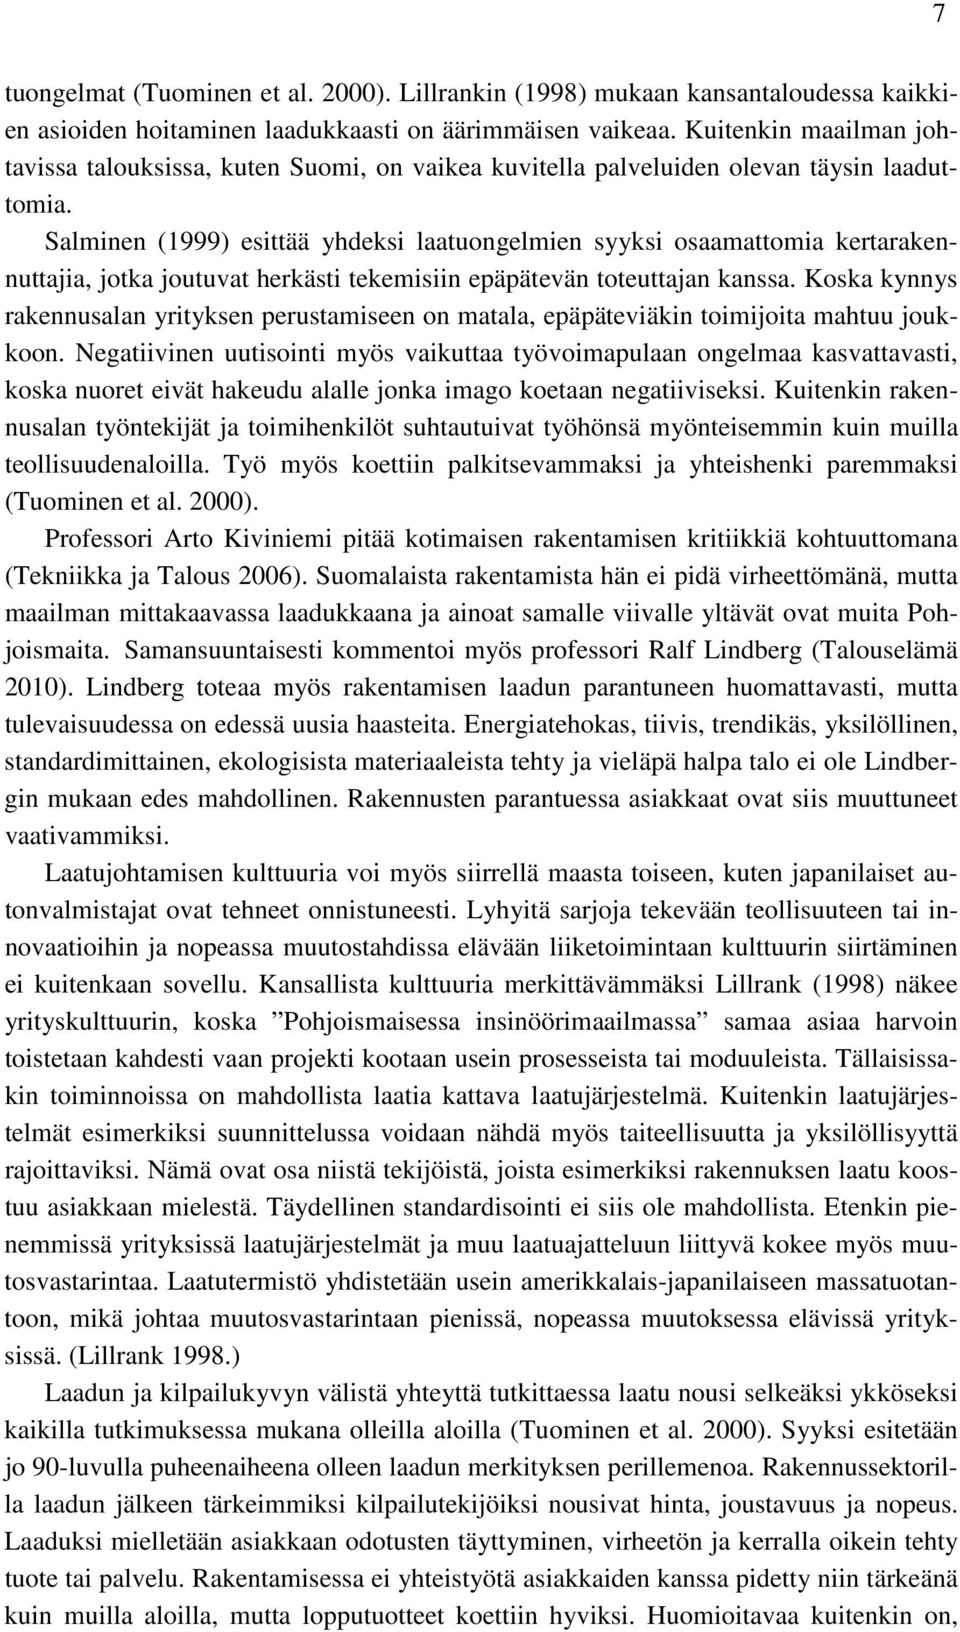 Salminen (1999) esittää yhdeksi laatuongelmien syyksi osaamattomia kertarakennuttajia, jotka joutuvat herkästi tekemisiin epäpätevän toteuttajan kanssa.